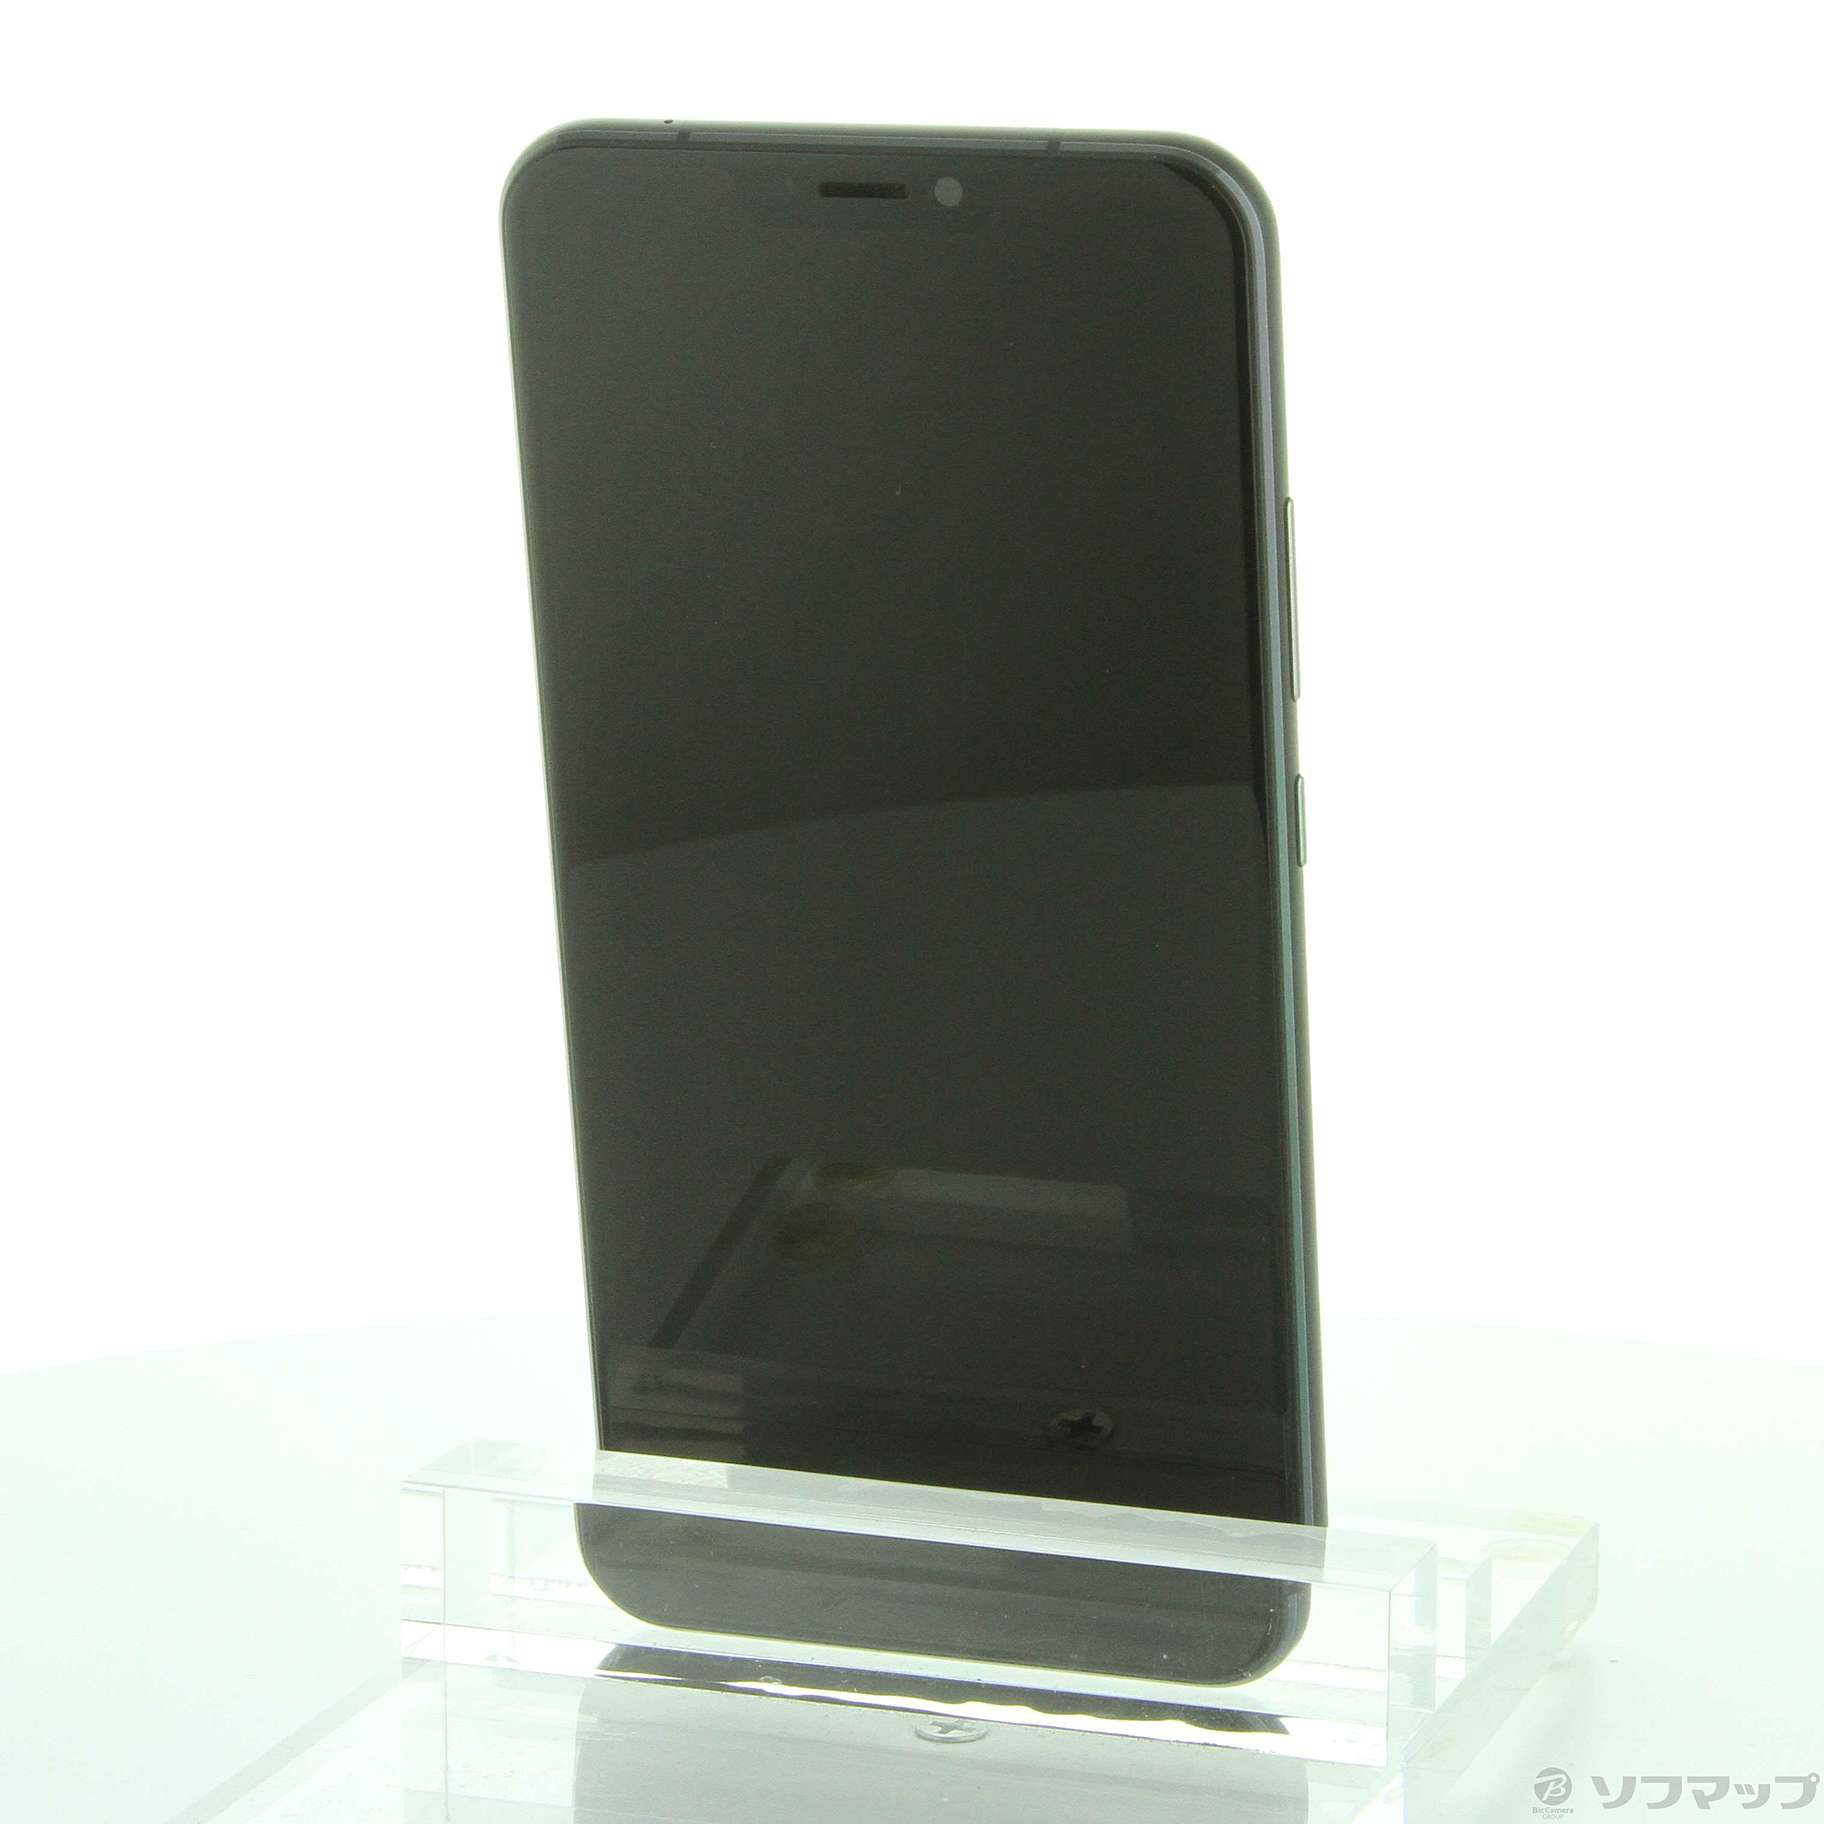 中古】ZenFone 5Z 128GB シャイニーブラック ZS620KL-BK128S6 SIM ...